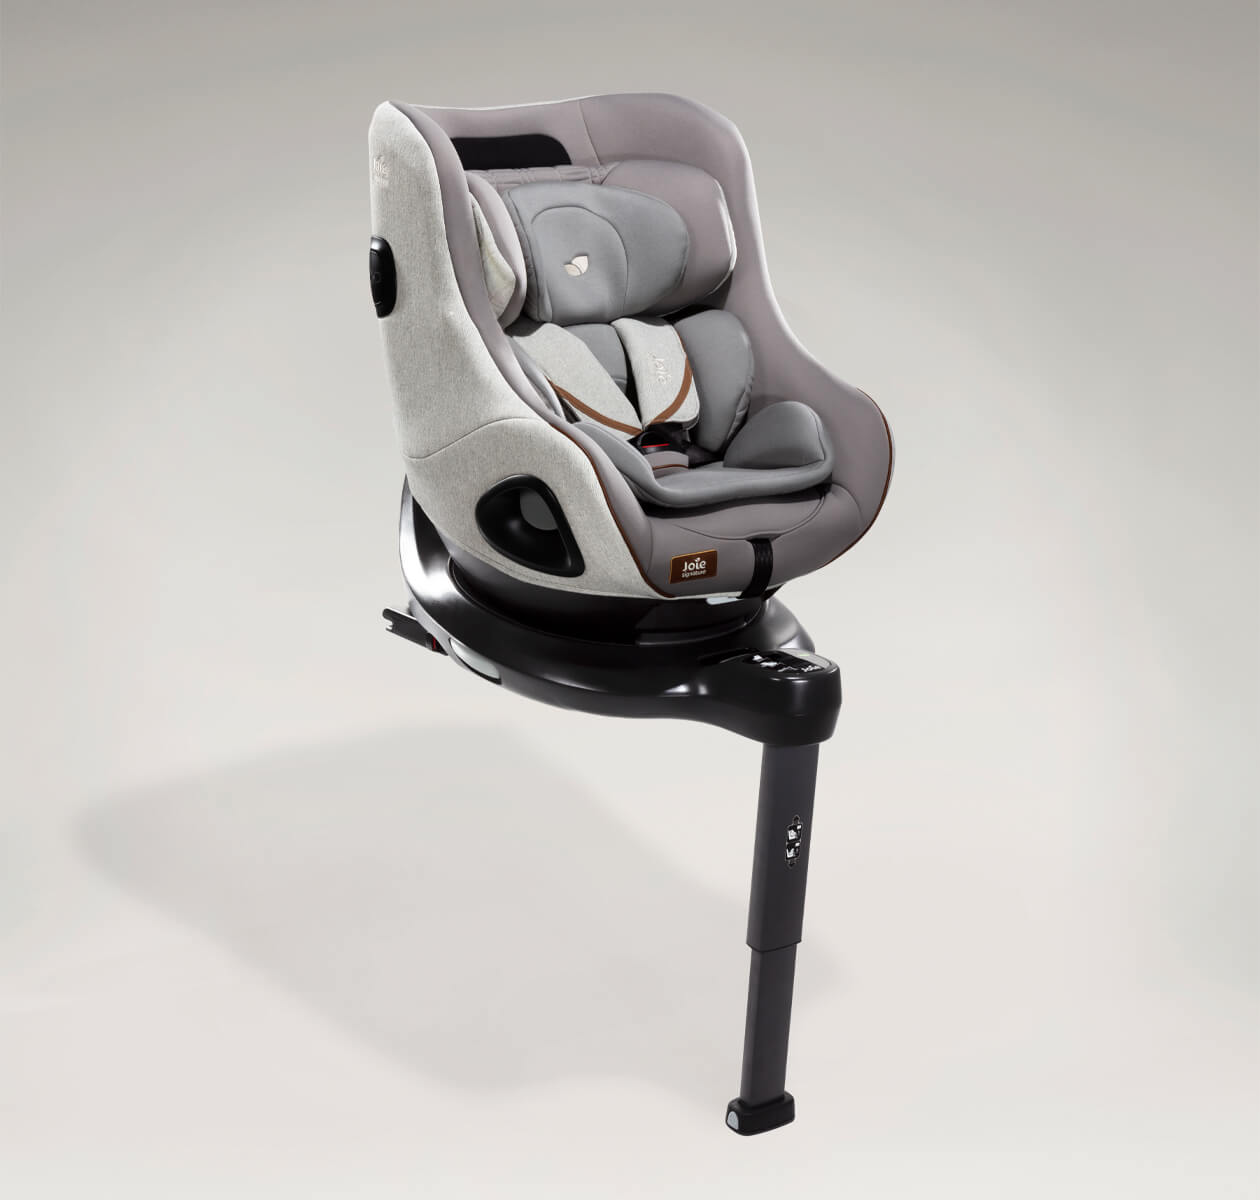 Spin 360: la silla de retención infantil con base rotativa de Joie -  Palabra de Madre